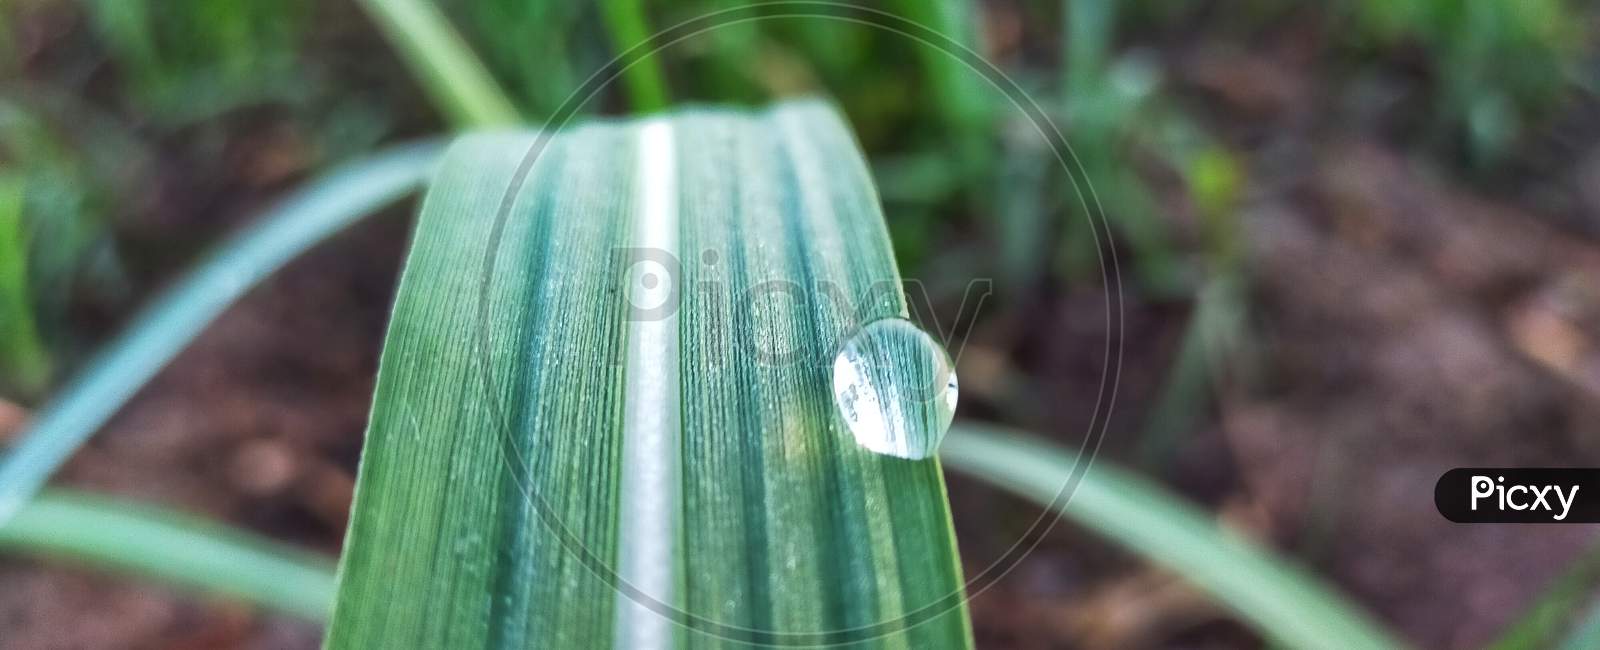 Dew drops on green leaf